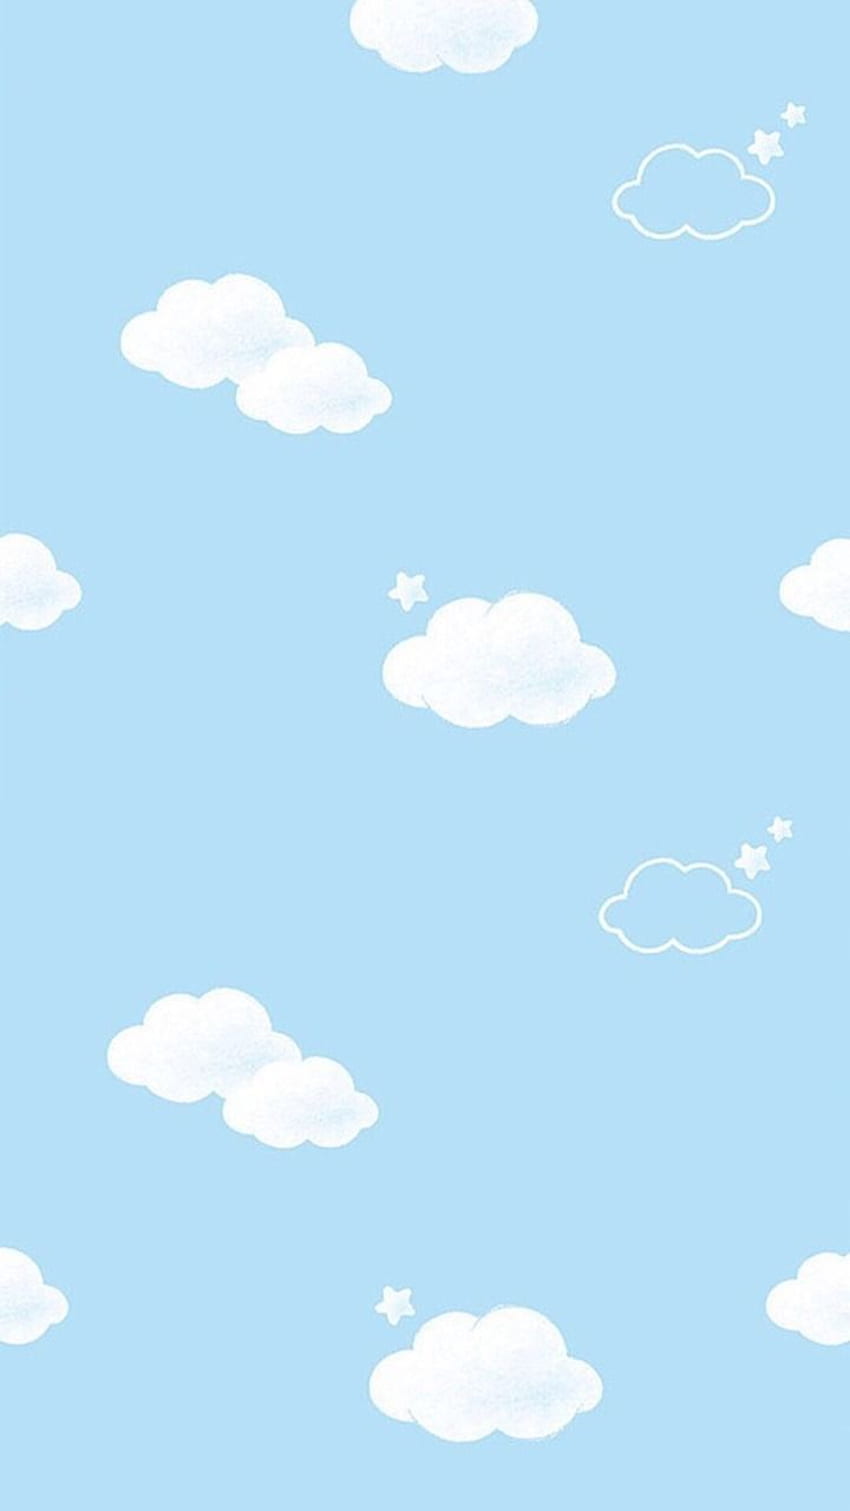 Lấp lánh như bầu trời xanh non, hình nền baby blue giúp bạn thư giãn và tăng lượng năng lượng cho ngày mới!